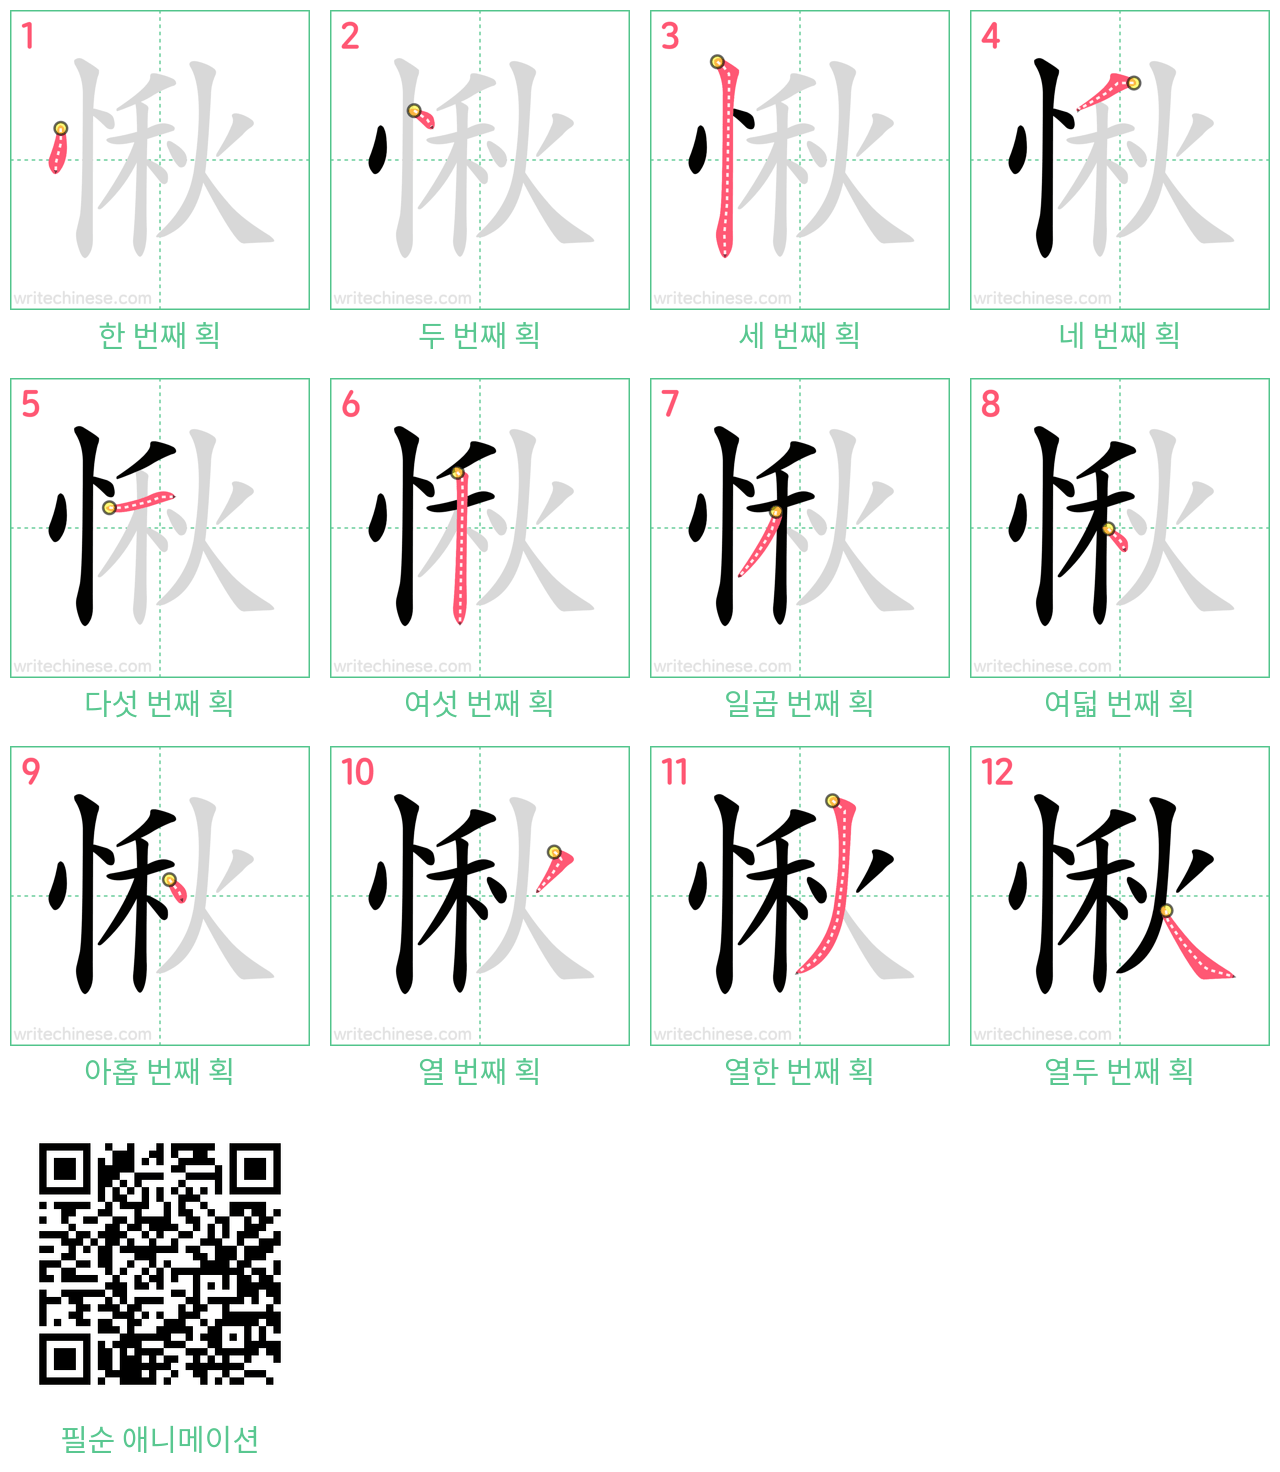 愀 step-by-step stroke order diagrams